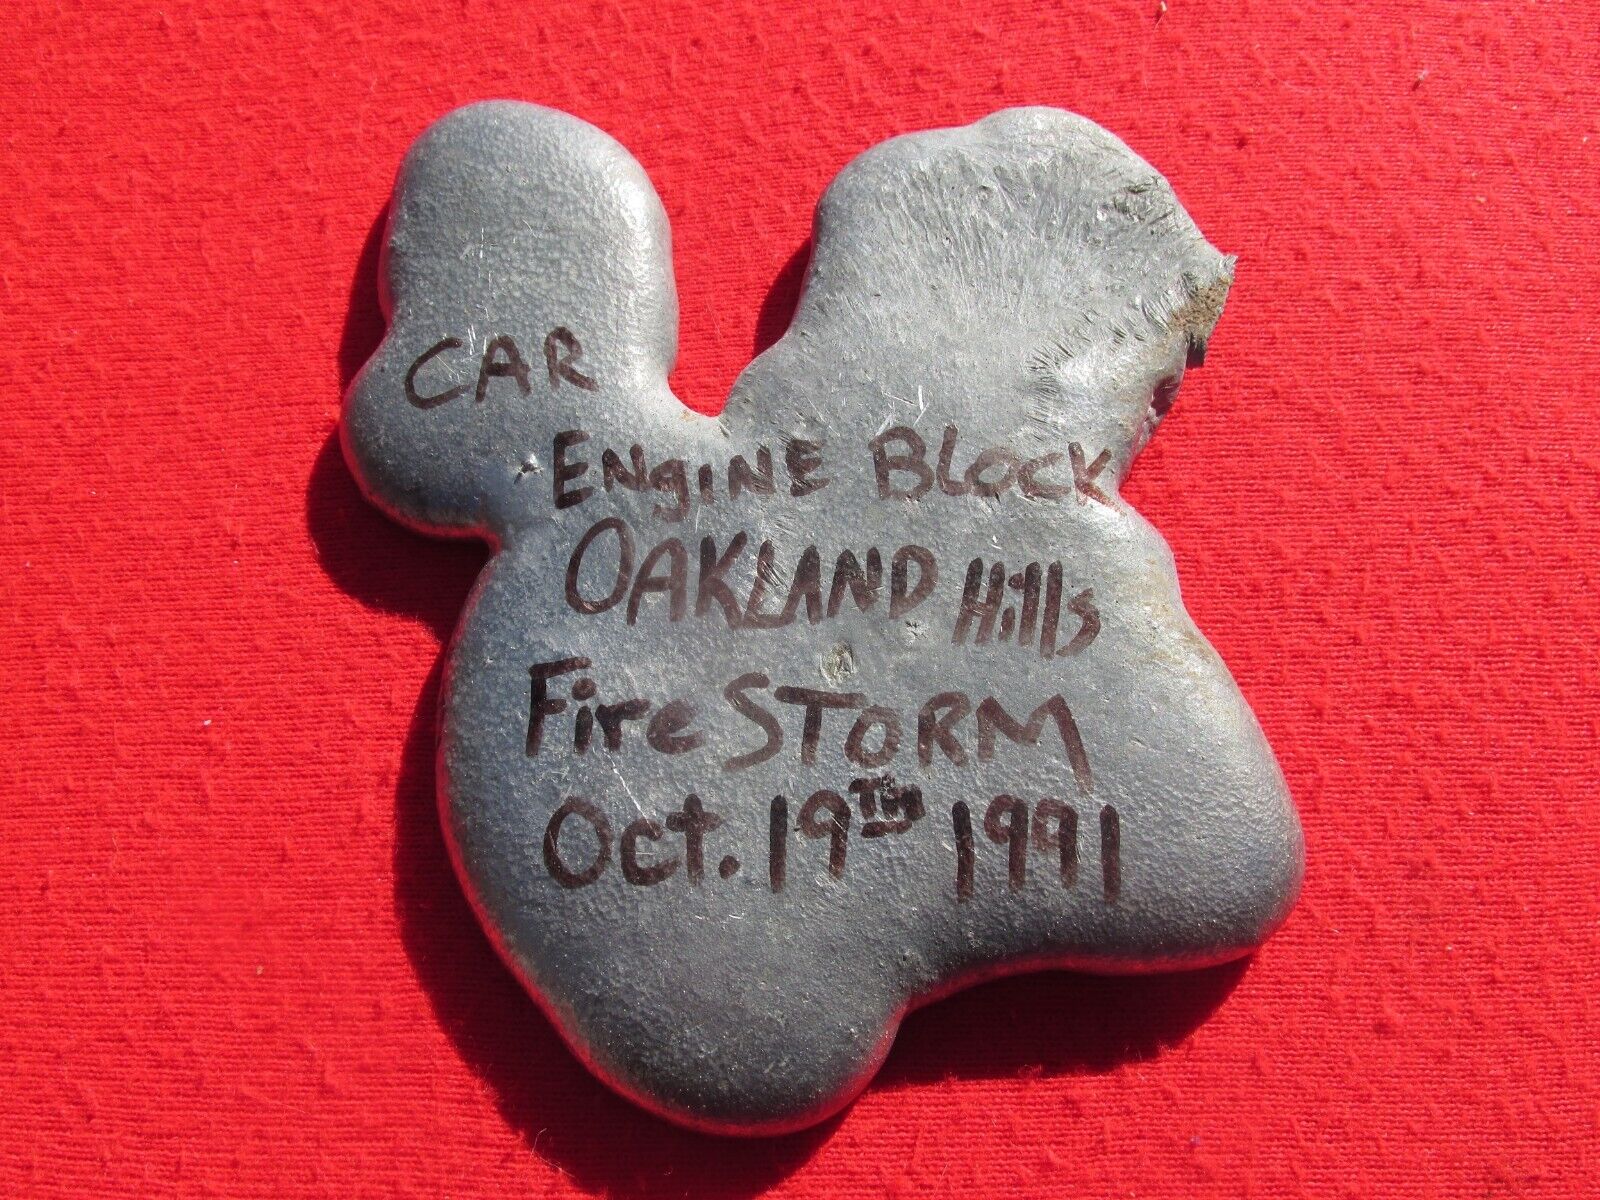 Oakland Hills Fire Engine Block Souvenir Oct 19 1991 Firestorm Cool Item SF bay